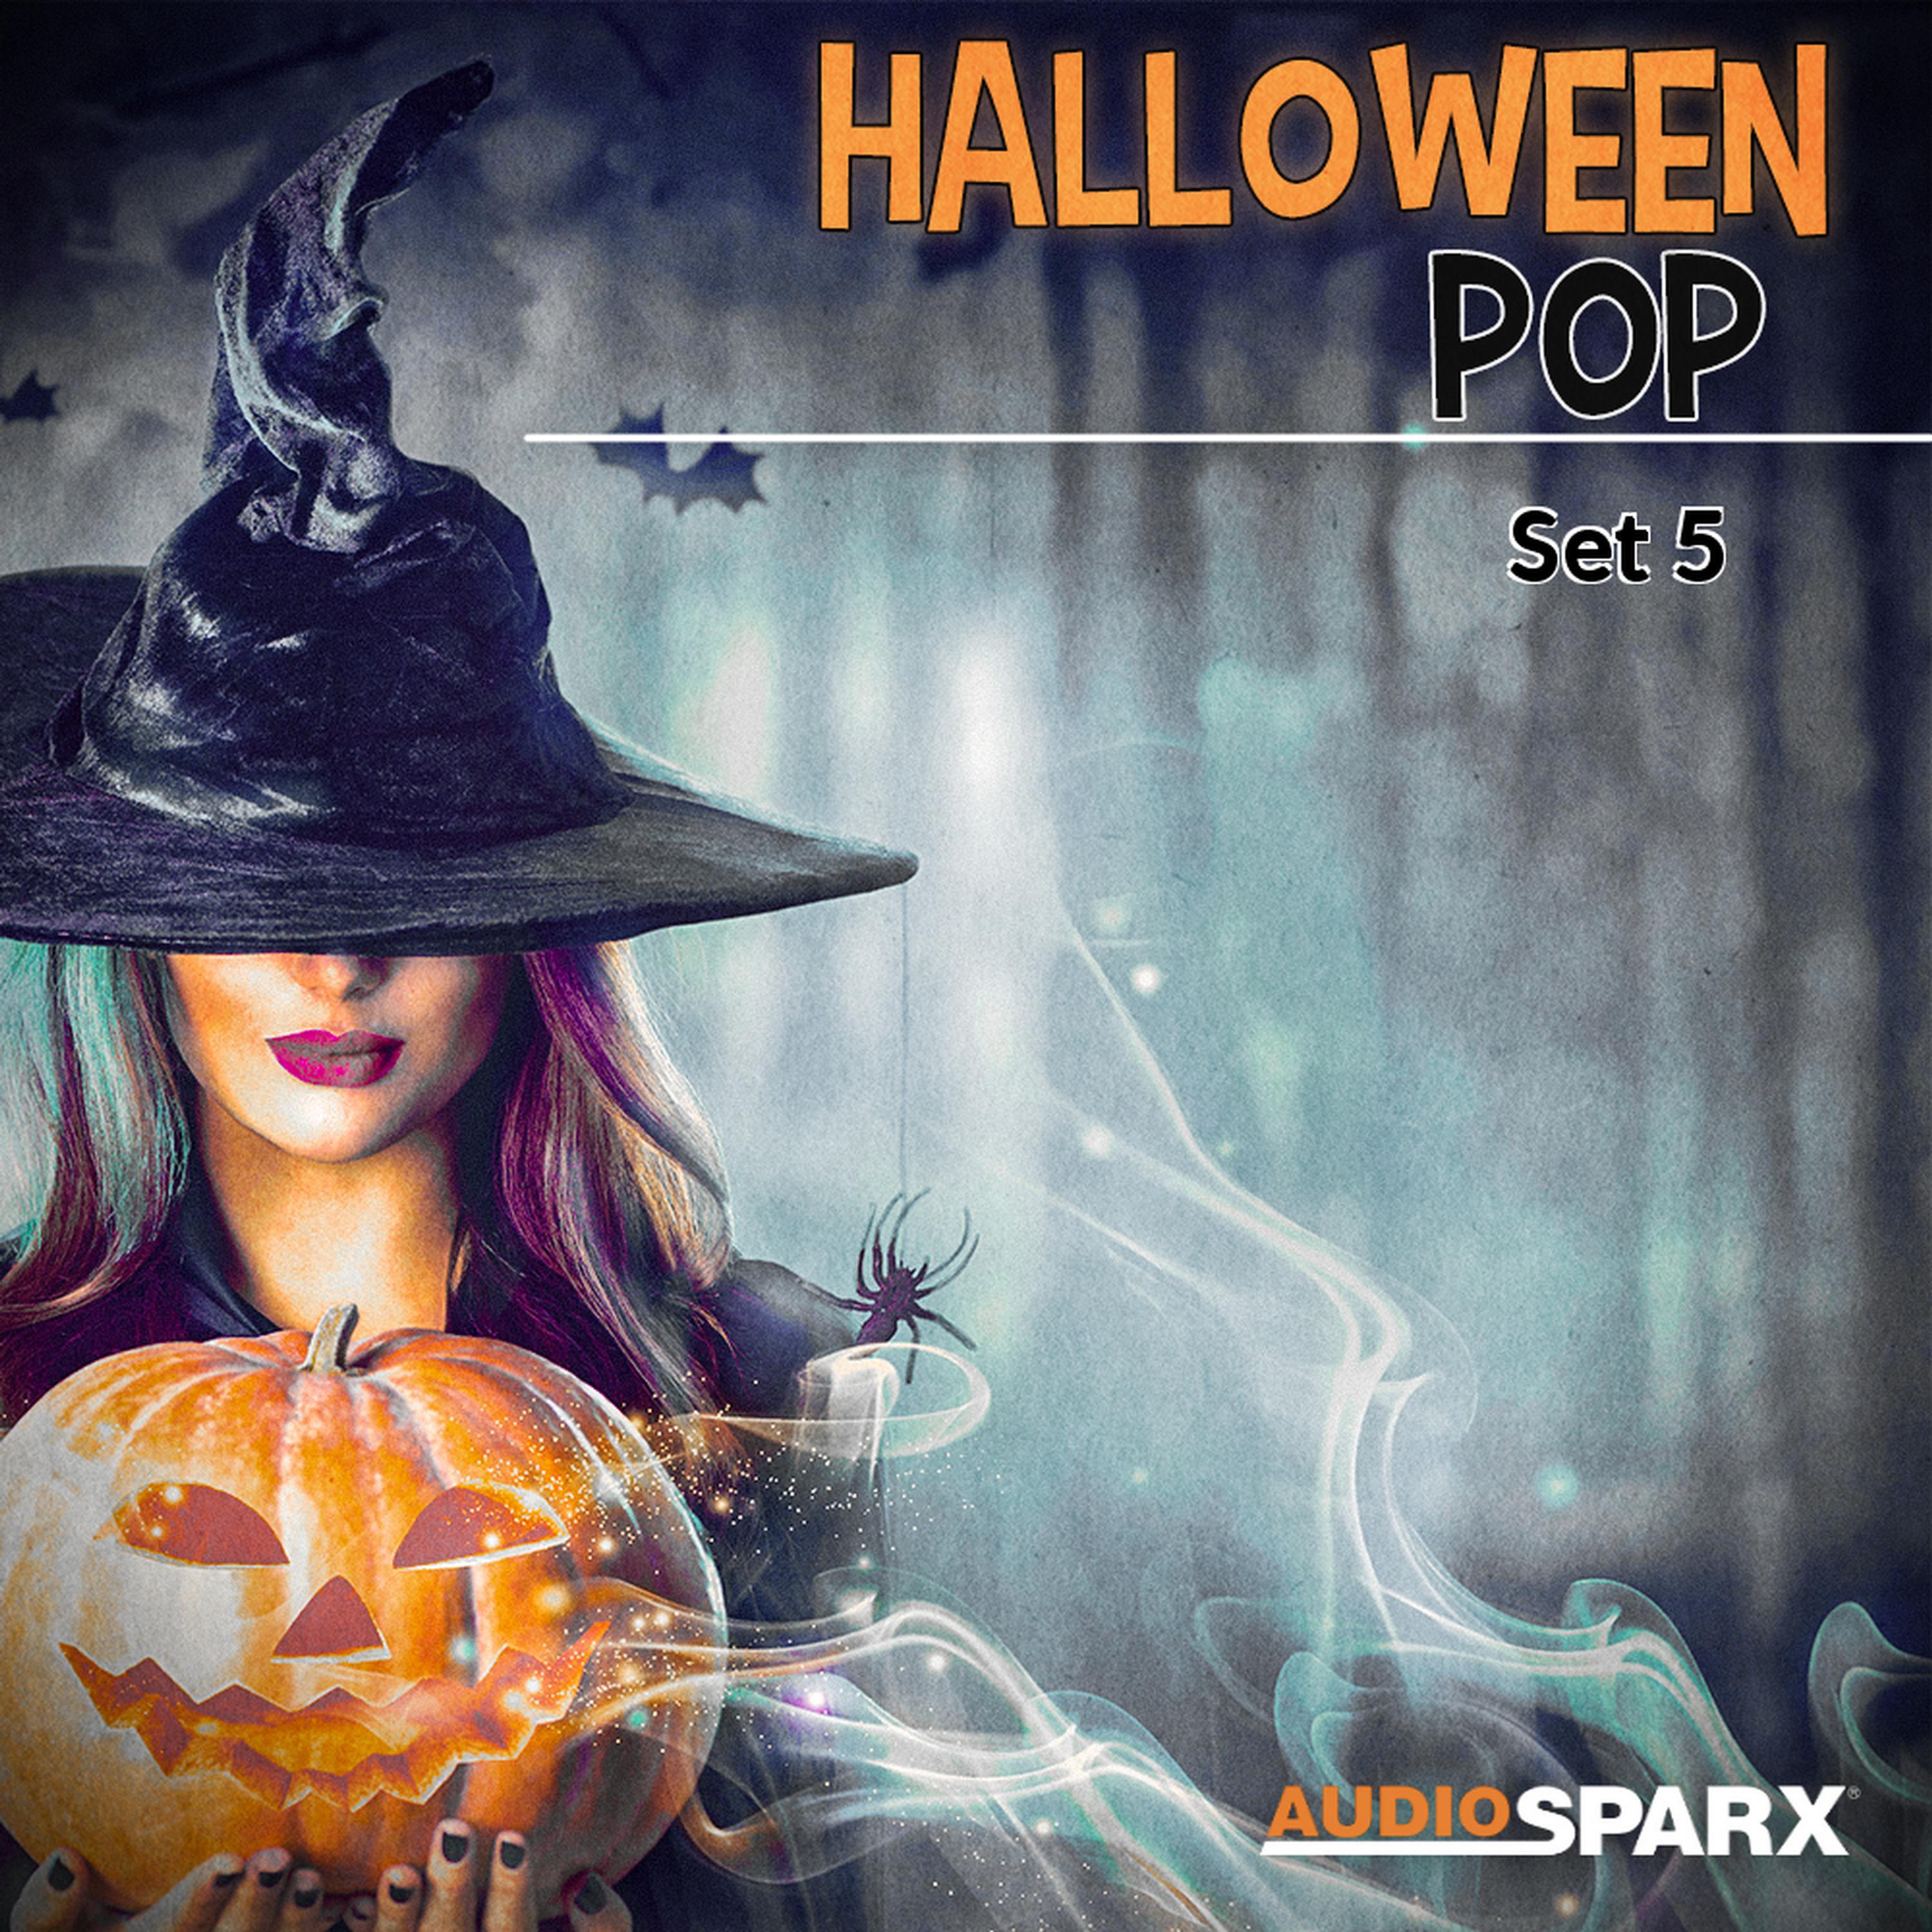 Zombor - Spooky Halloween Madness